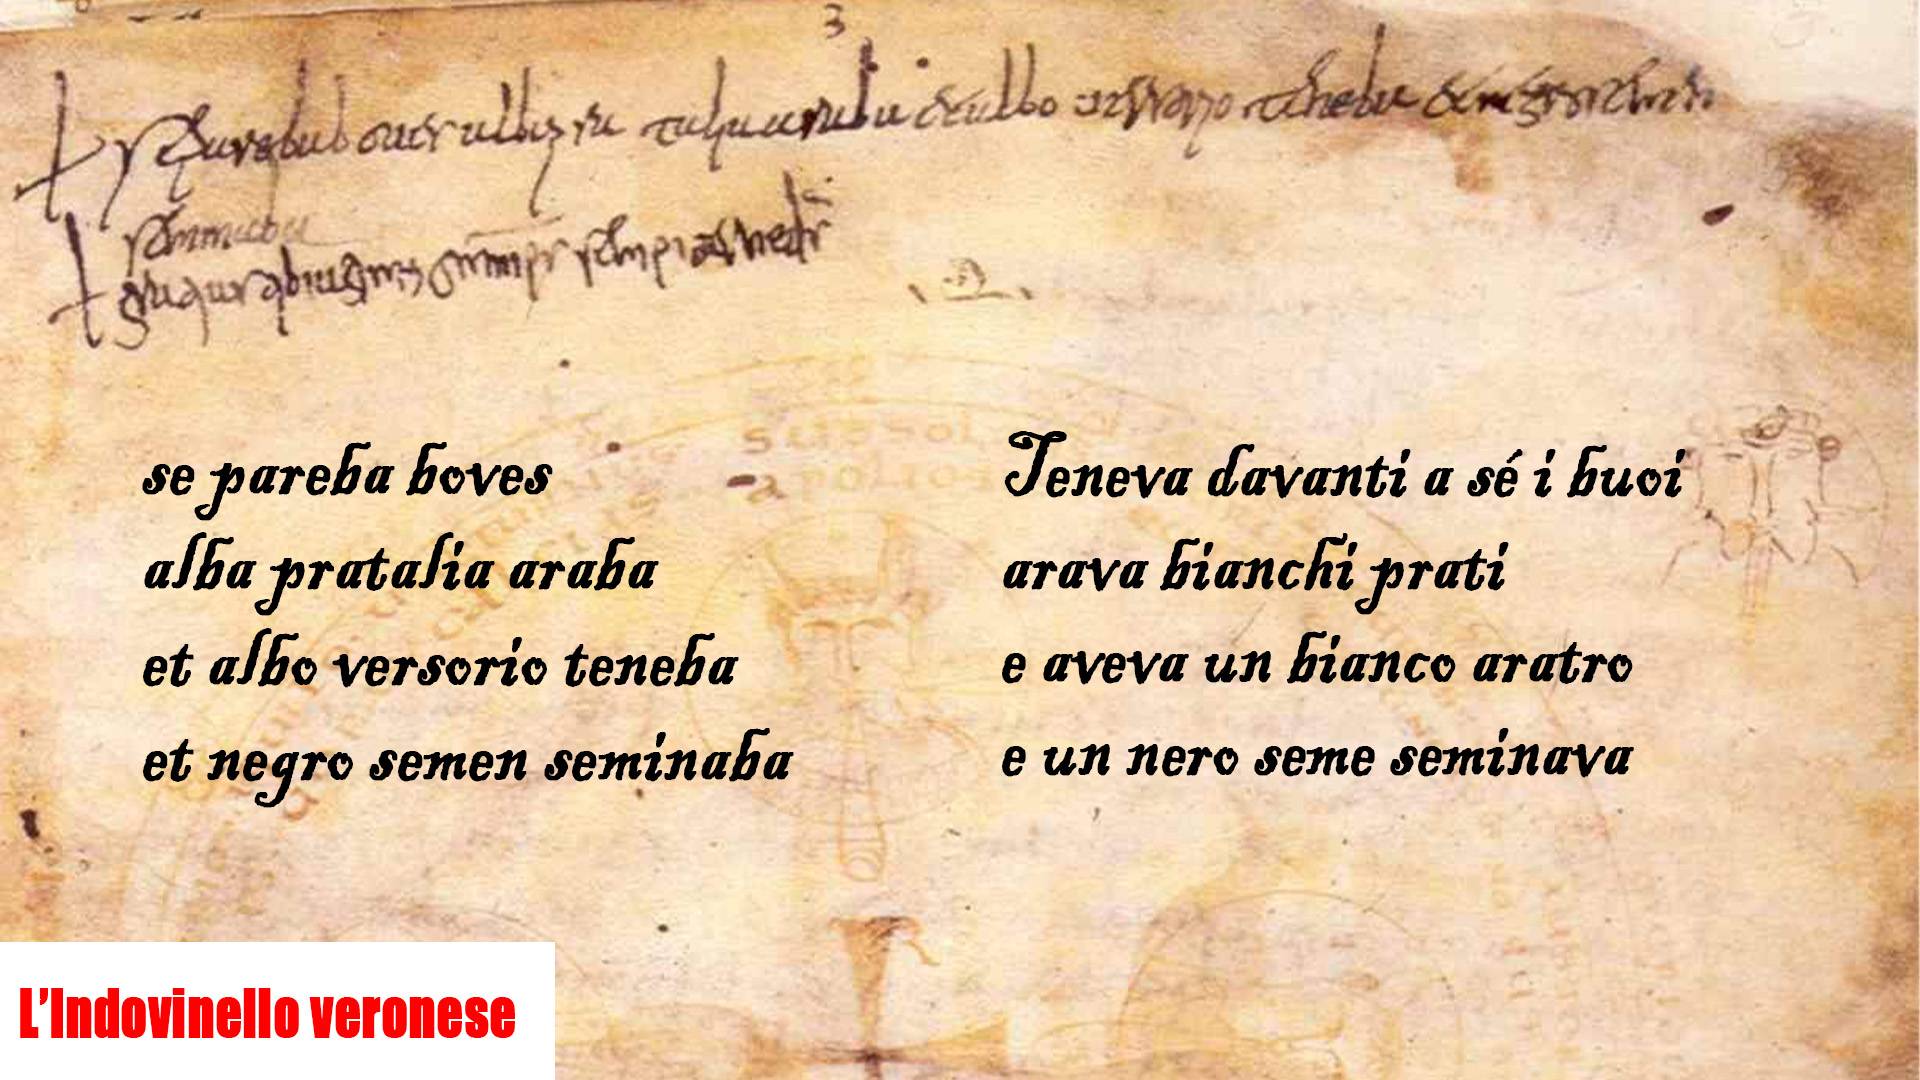 L’Indovinello veronese, il primo documento in lingua italiana risalente a 1200 anni fa